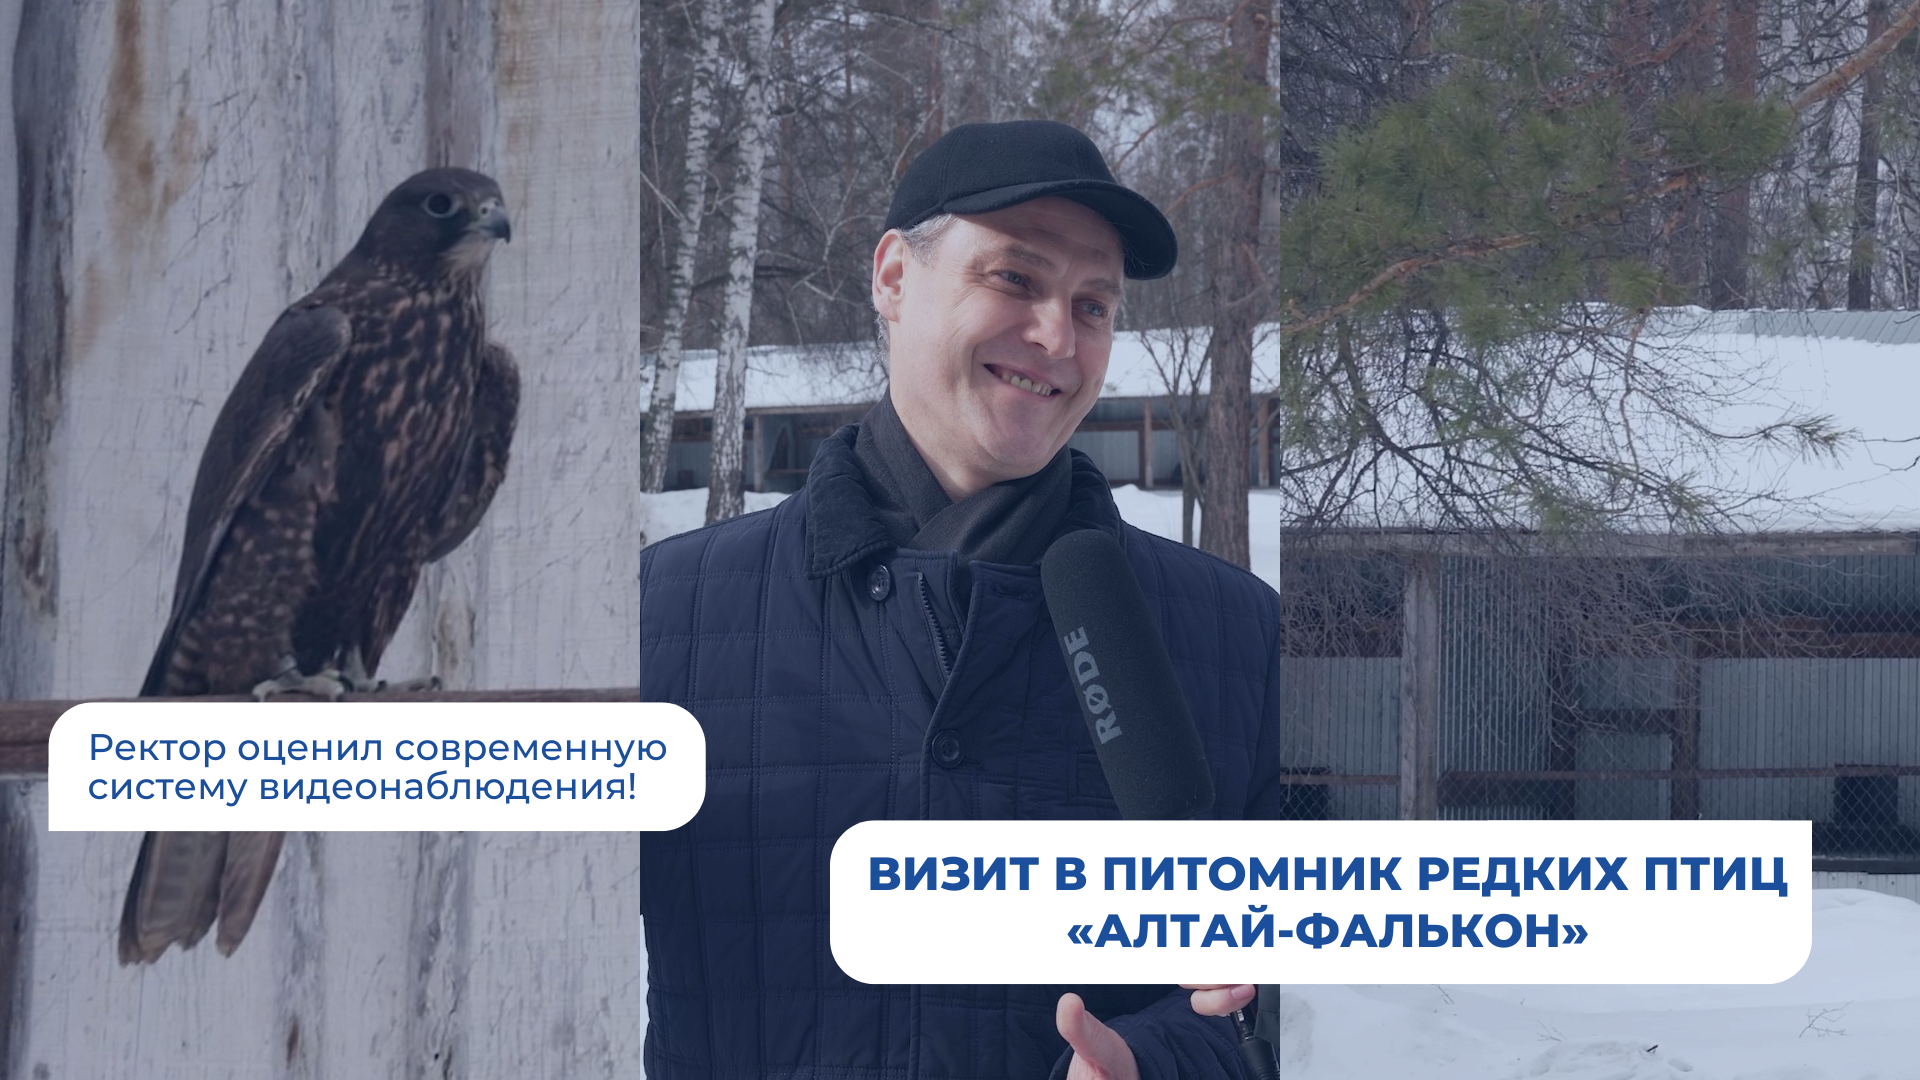 Установка современной системы видеонаблюдения в питомнике редких птиц «Алтай-Фалькон»